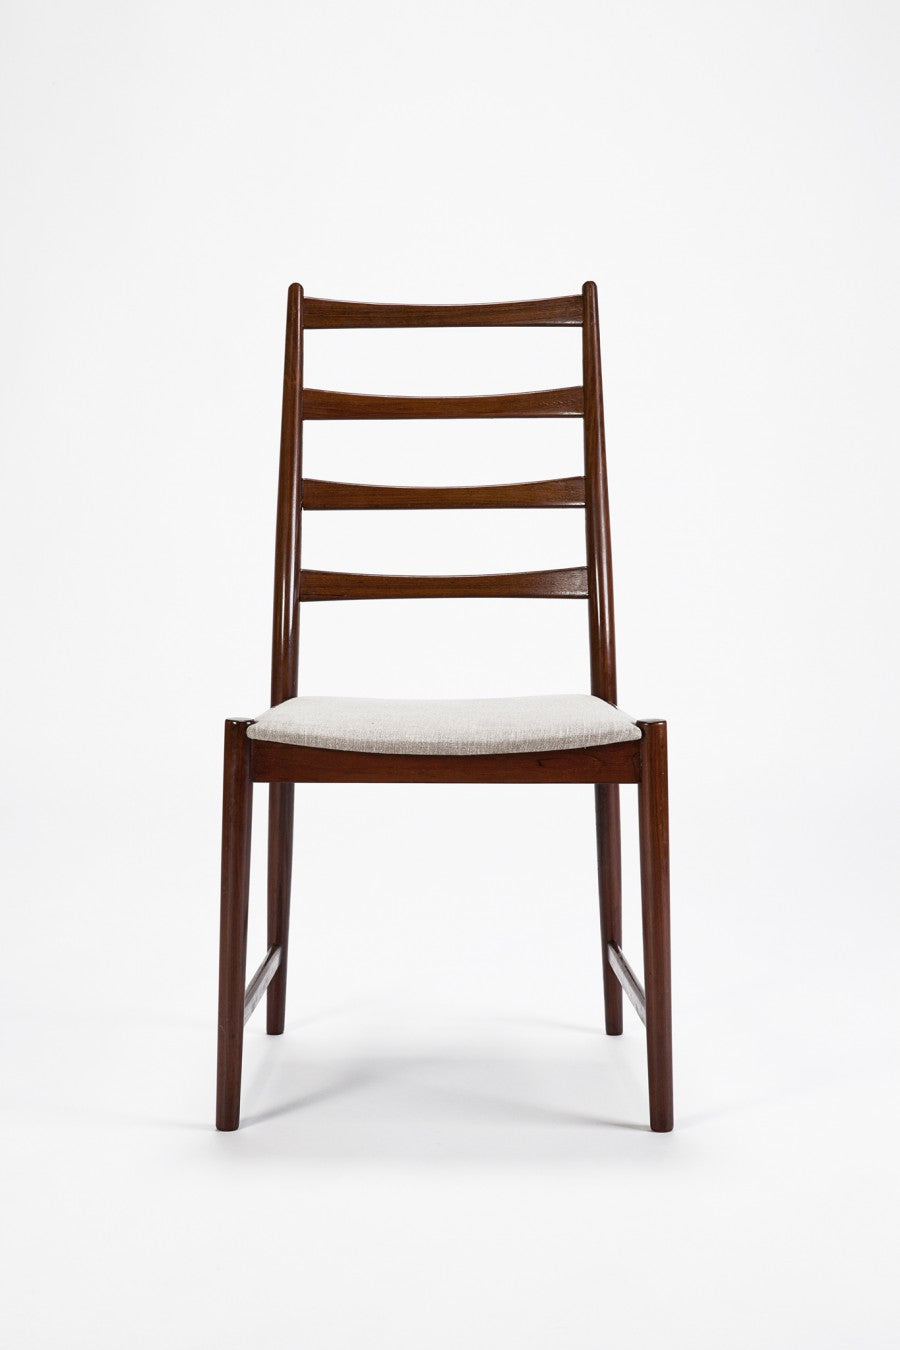 6 dänische Palisander Stühle von Jorgen Hoj